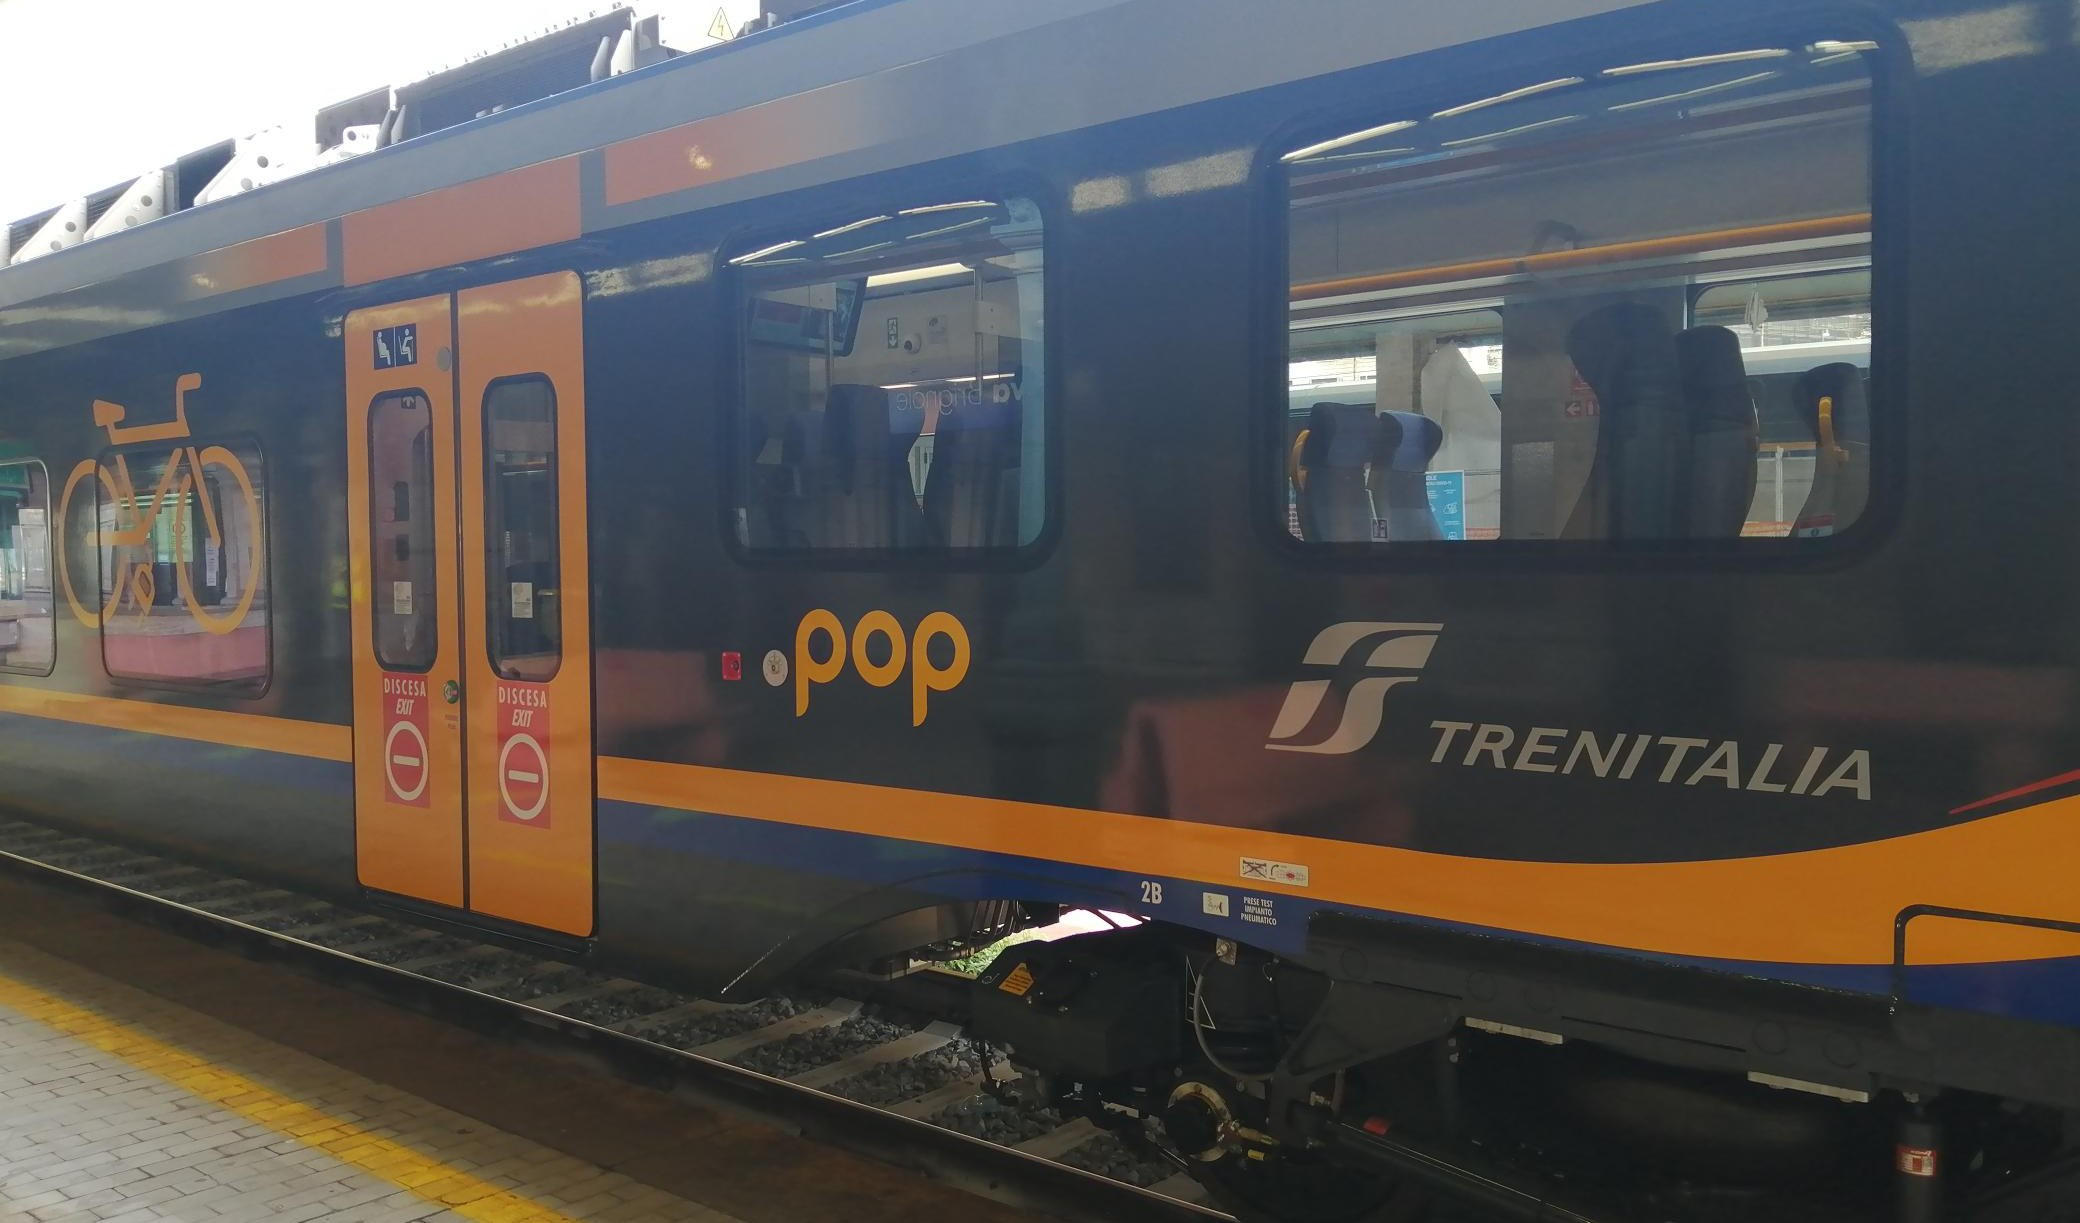 Frana in Francia, sospesa circolazione treni tra Ventimiglia e Cuneo